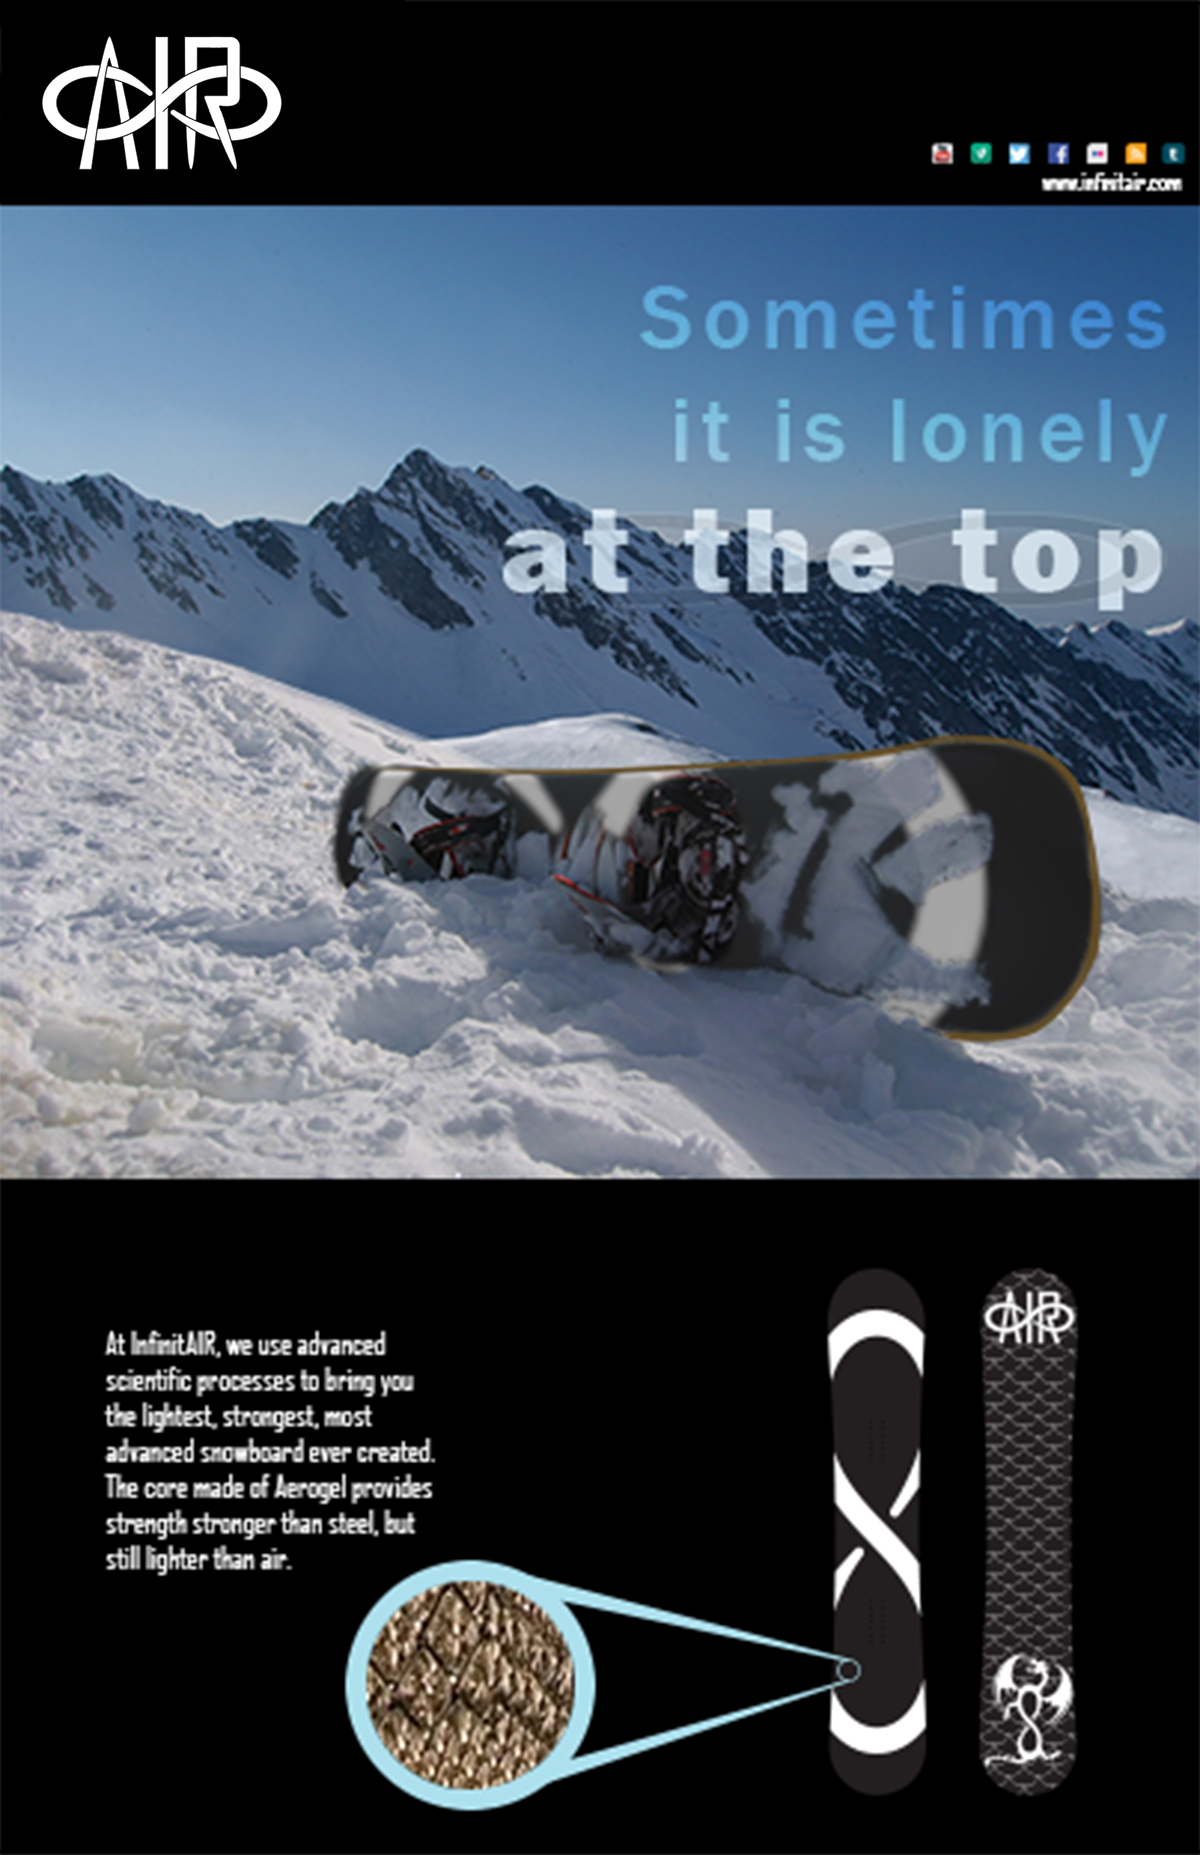 snowboard ad spread Magazine Ad